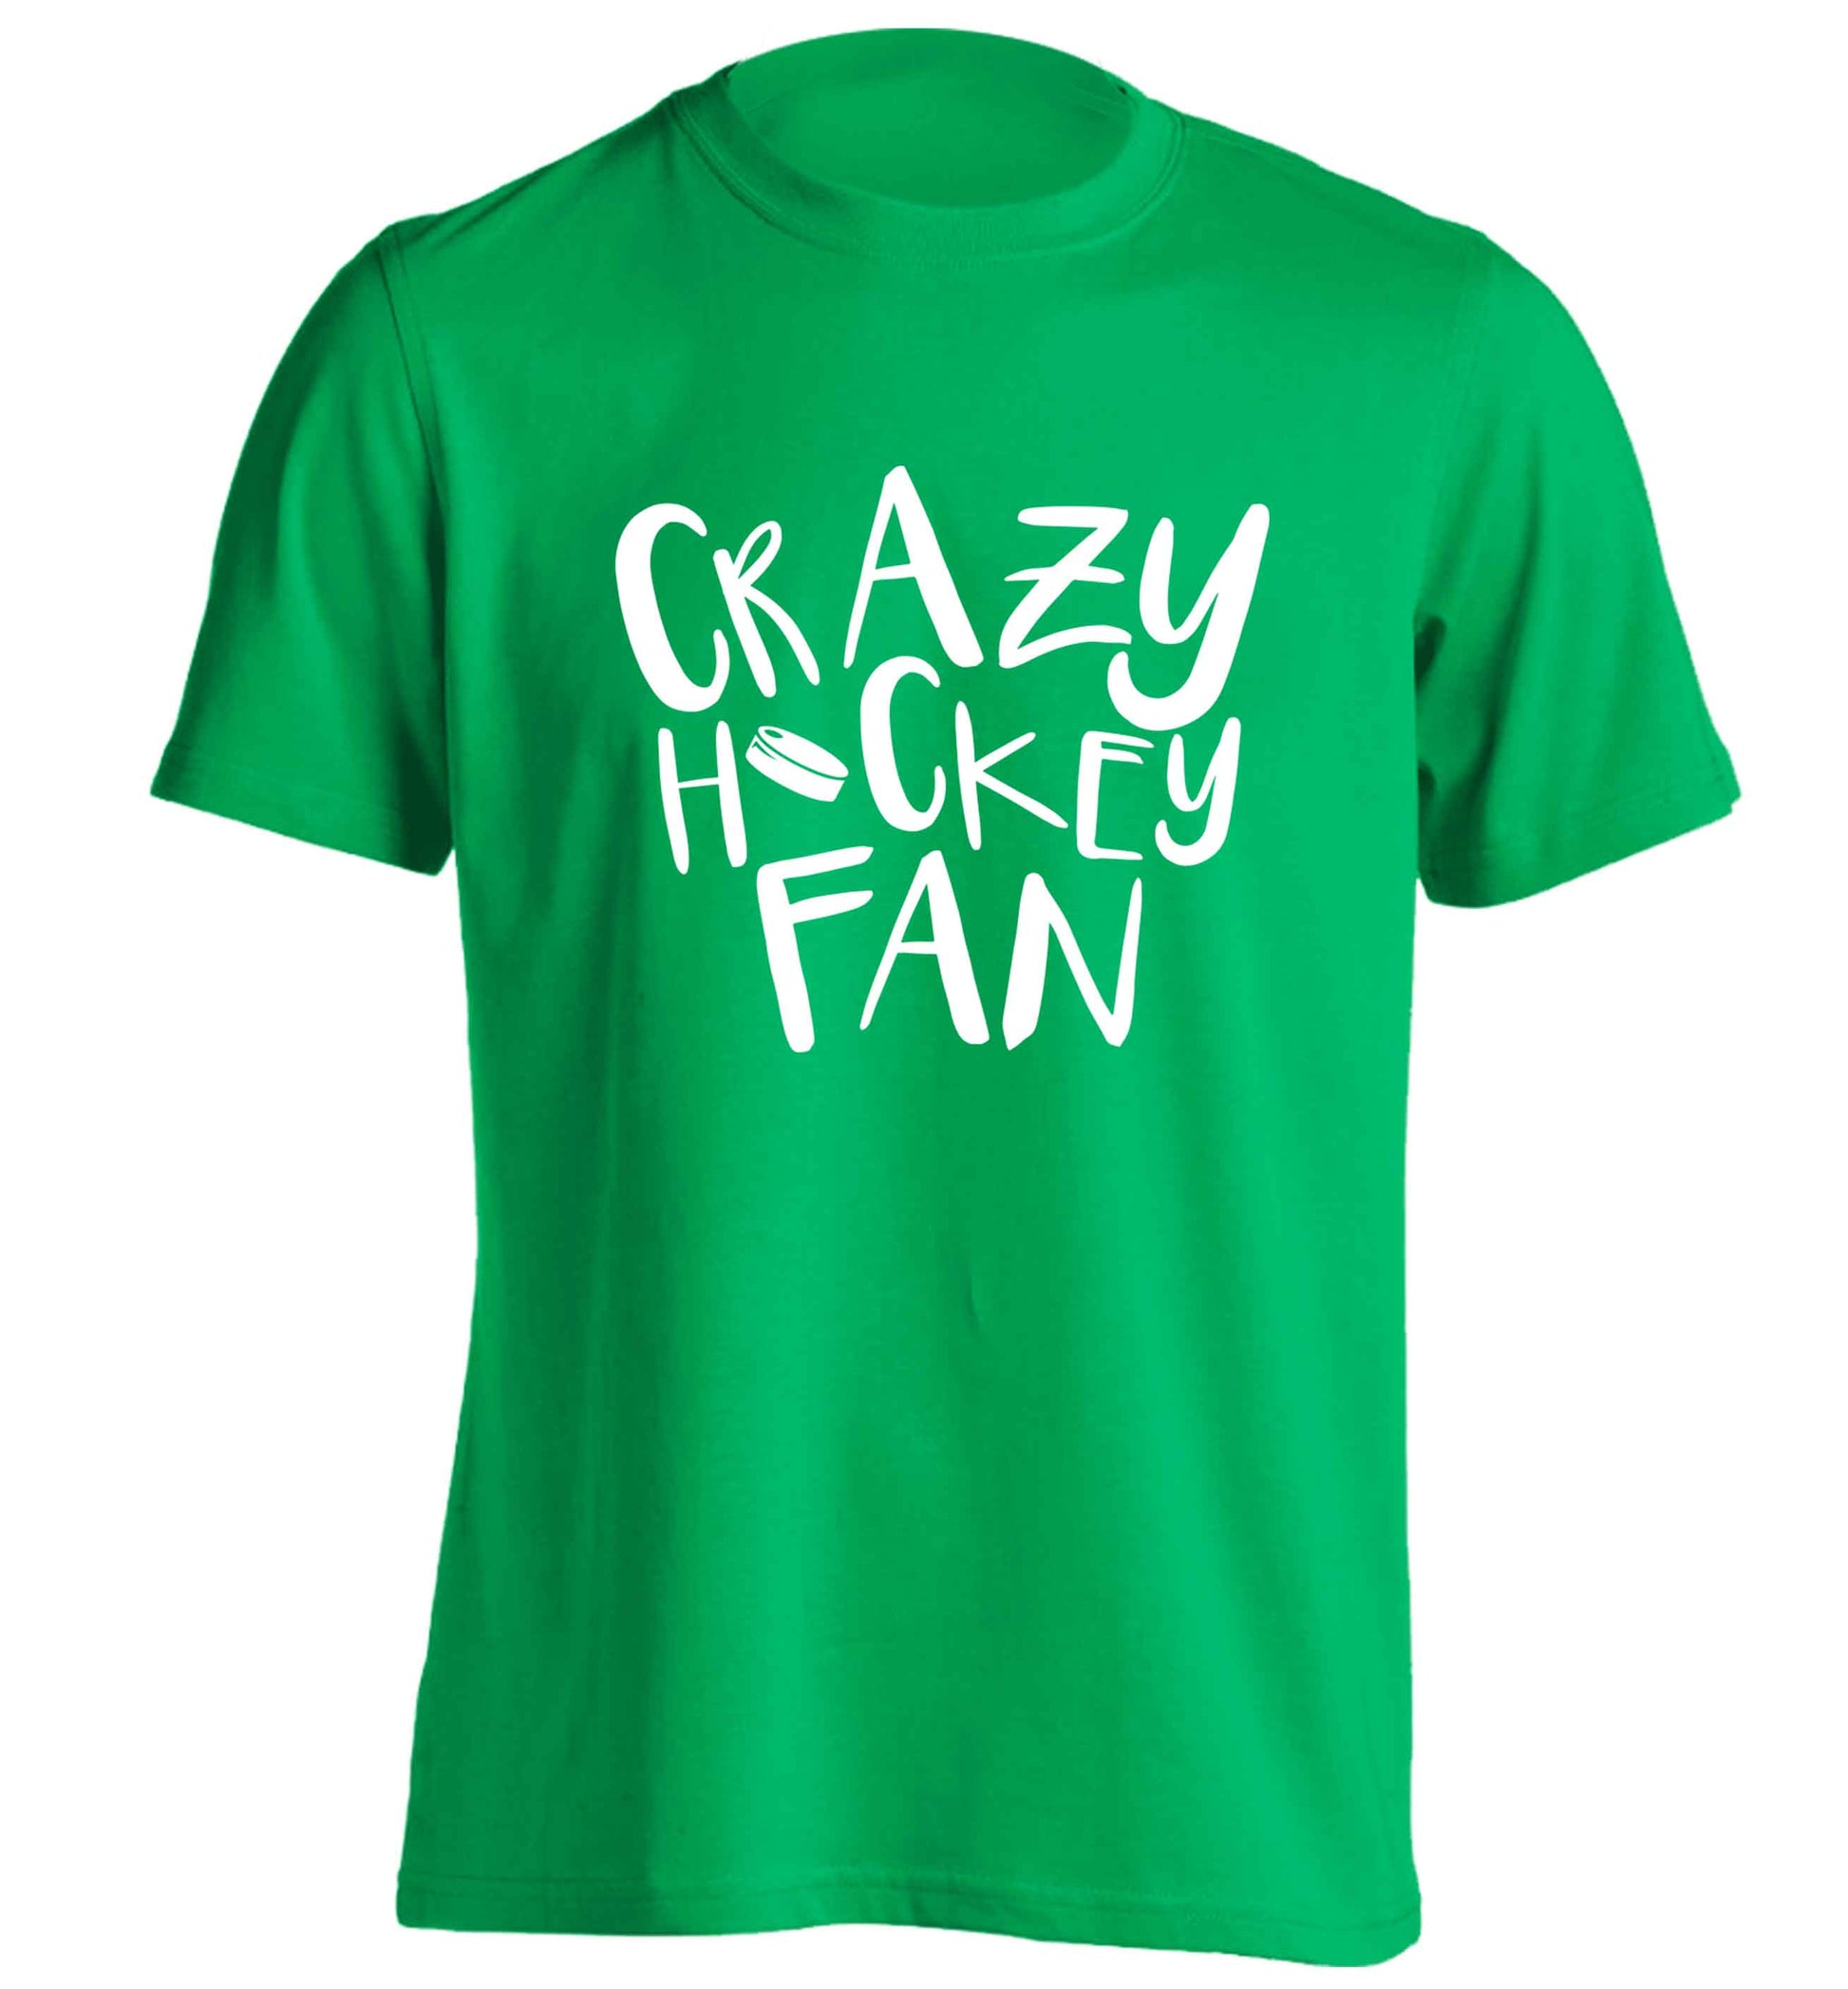 Crazy hockey fan adults unisex green Tshirt 2XL